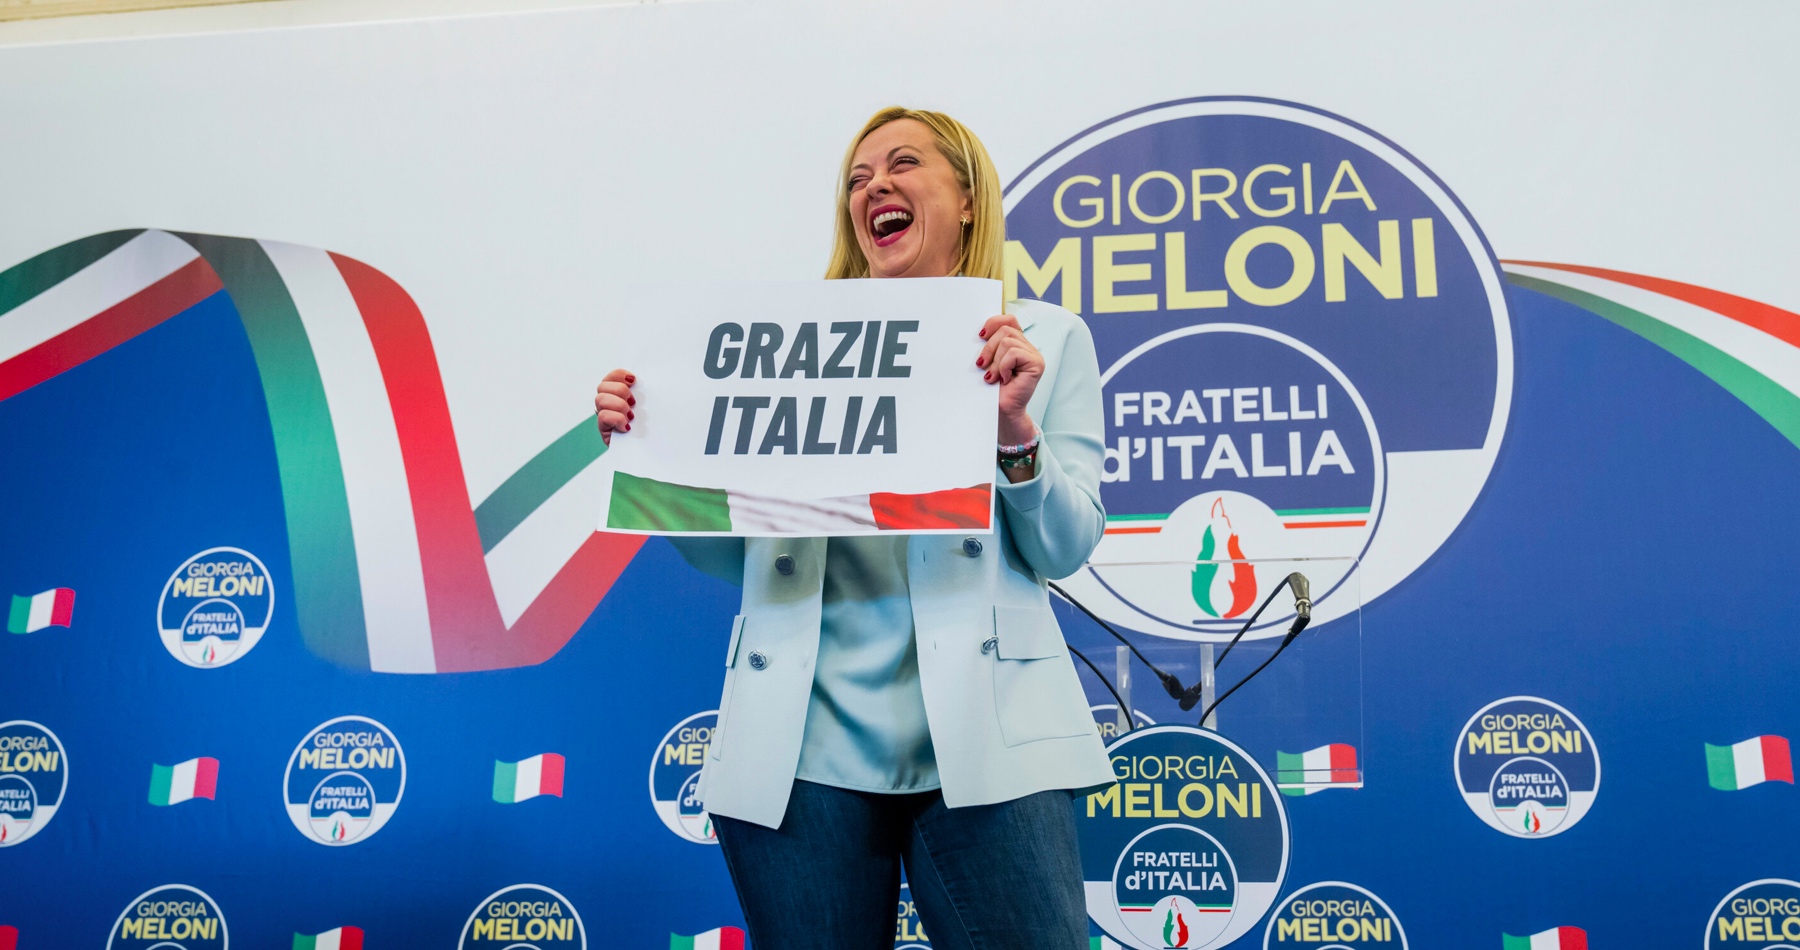 Líderka víťaznej strany talianskych volieb Meloniová odkázala Zelenskému, že Ukrajina môže počítať s podporou novej talianskej vlády